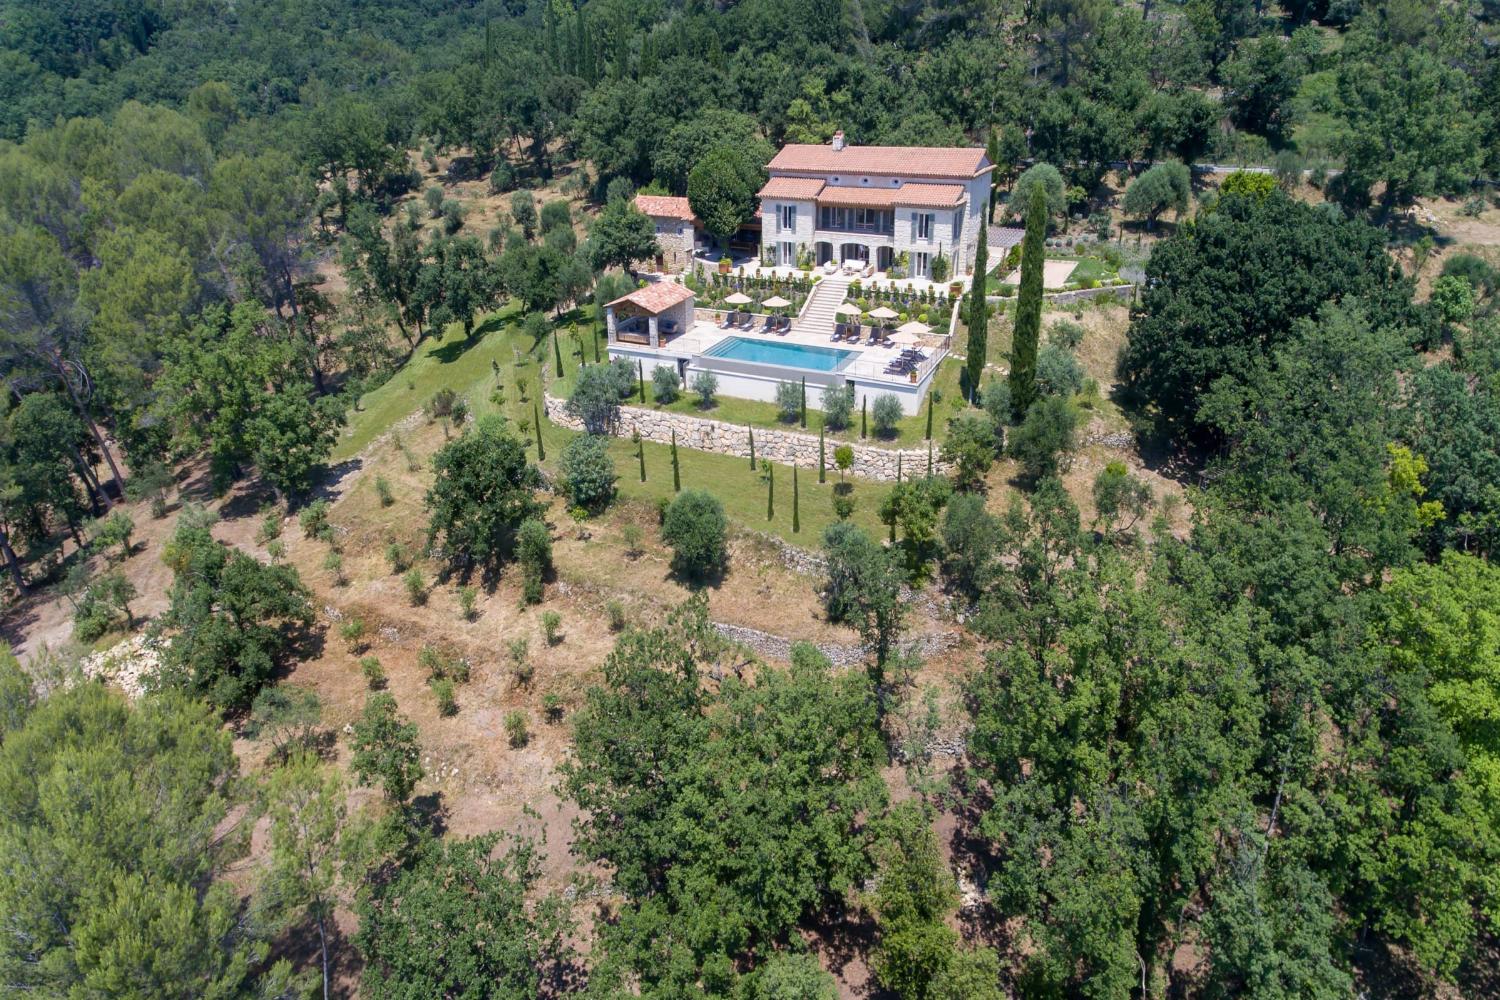 Maison de vacances en Provence avec piscine privée à débordement chauffée